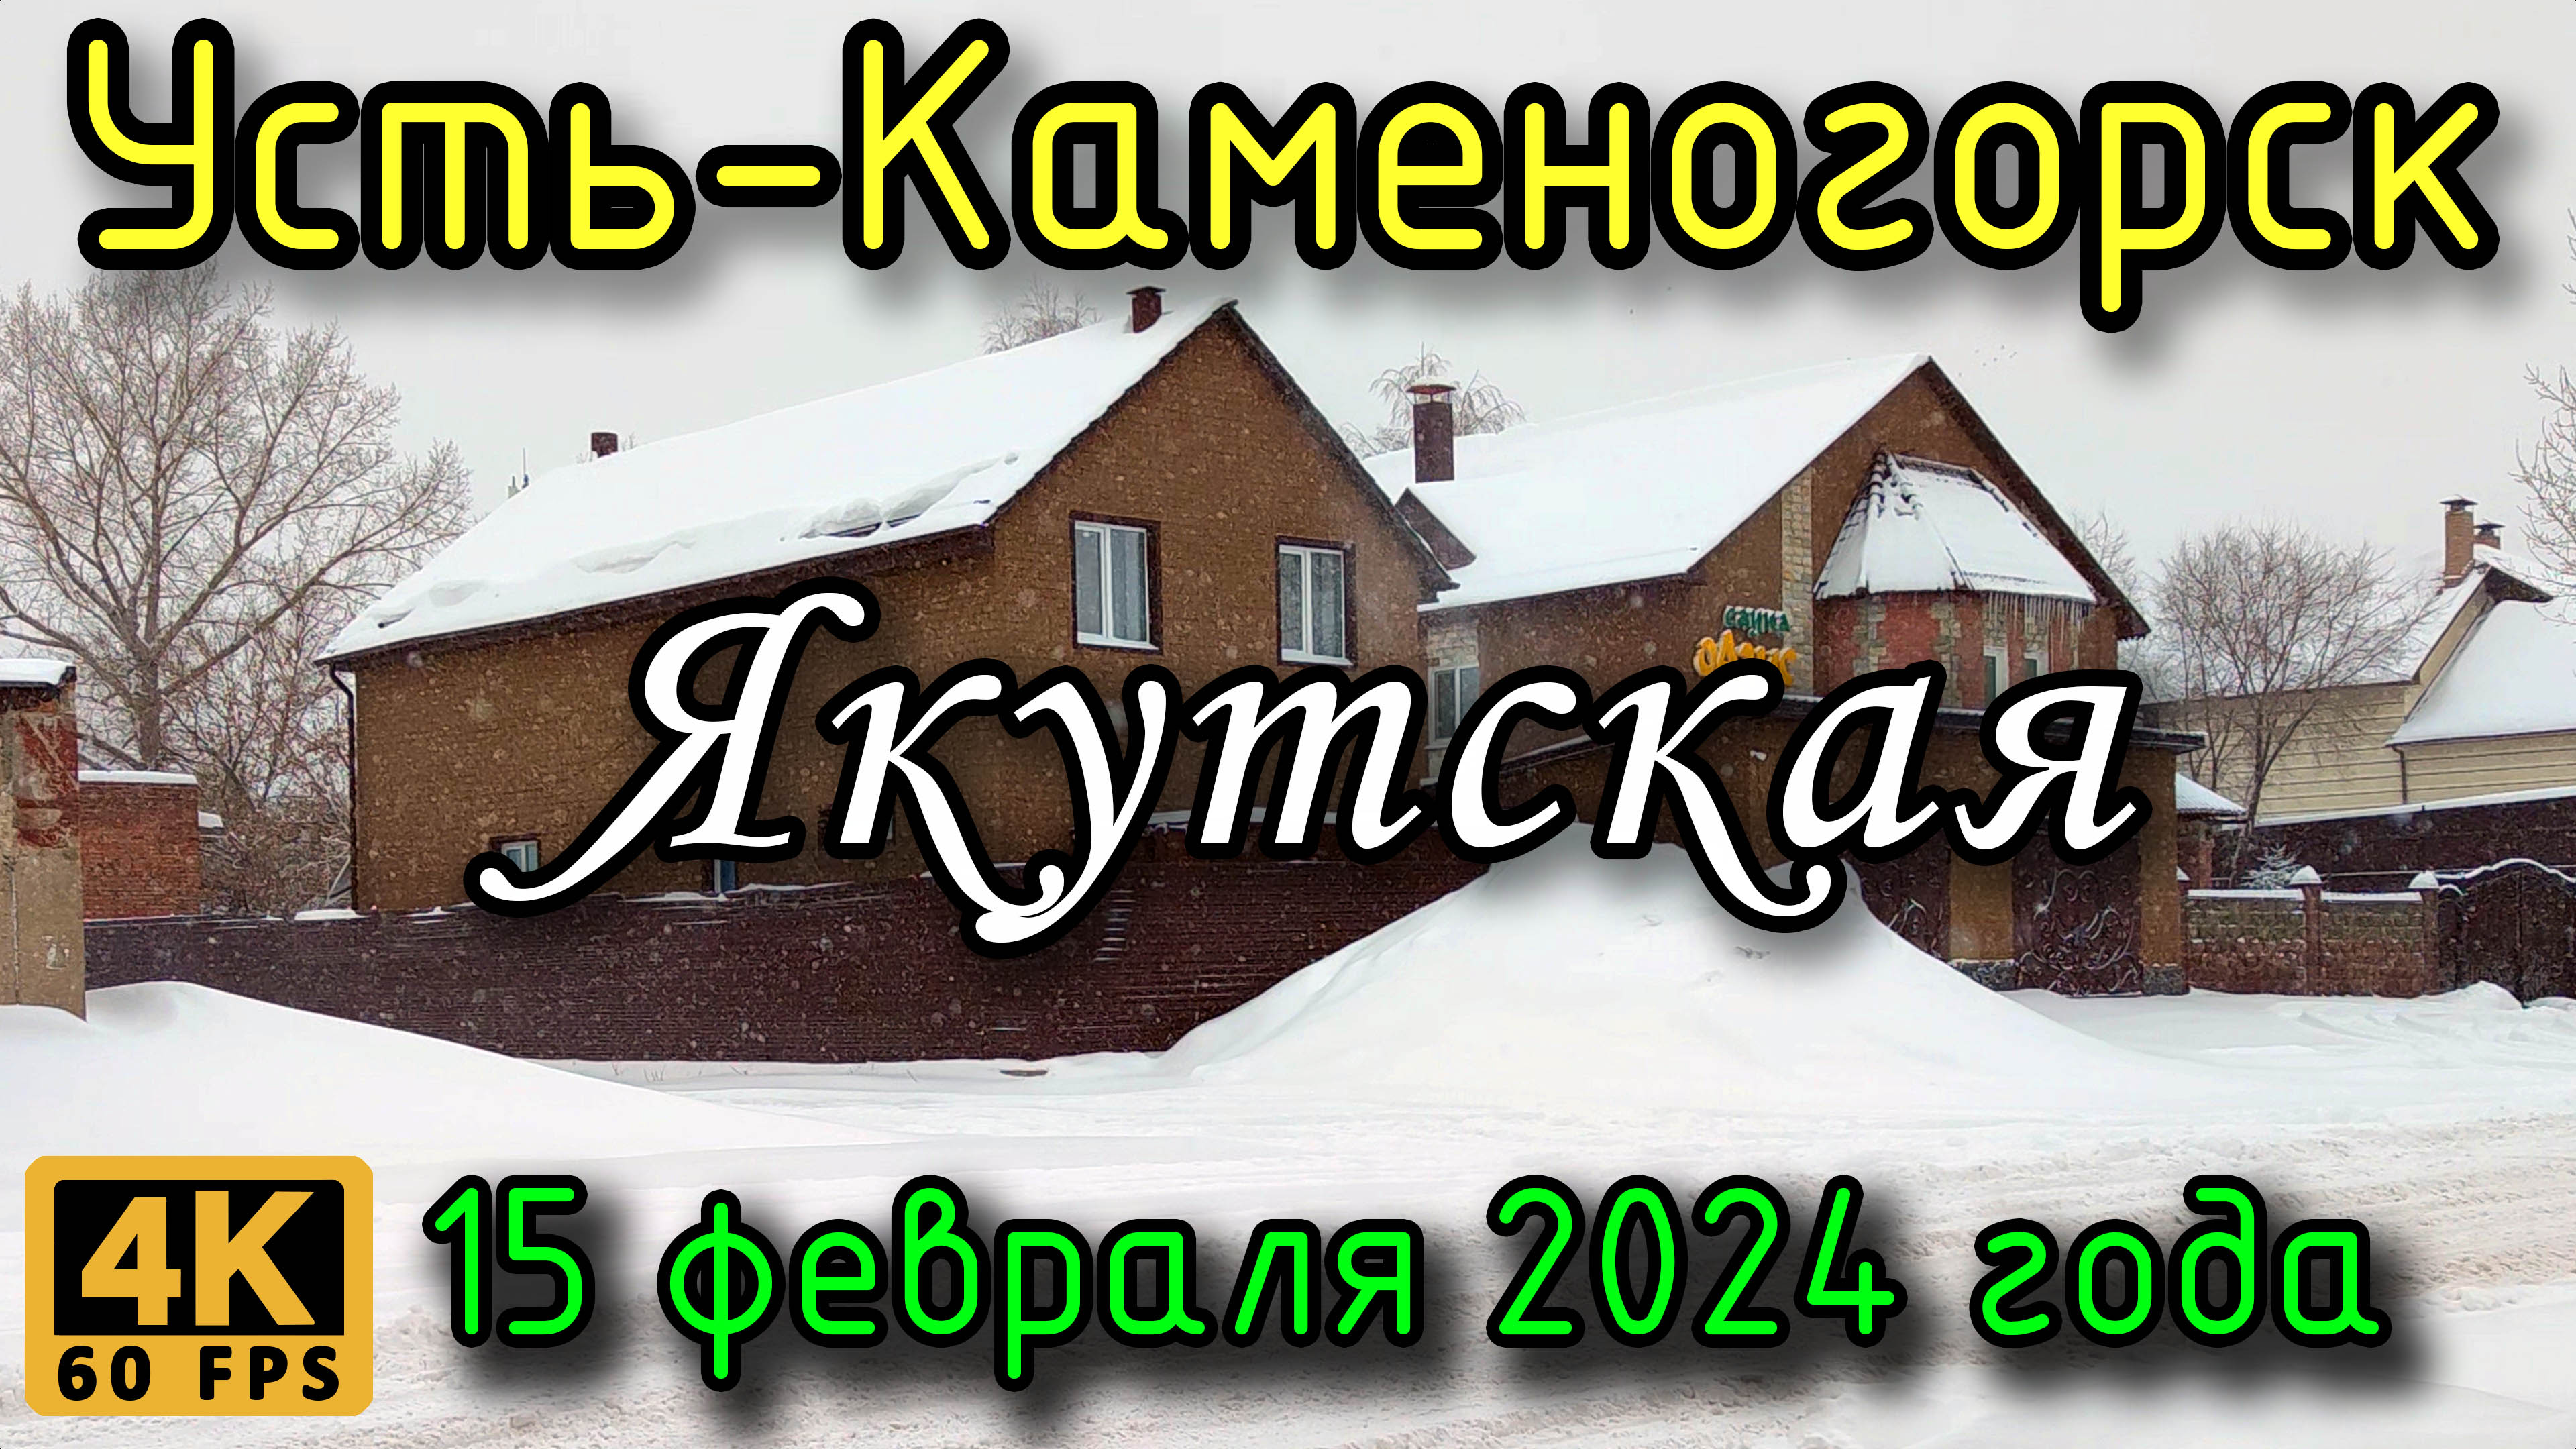 Усть-Каменогорск: ул. Якутская в 4К (идет снег), 15 февраля 2024 года.